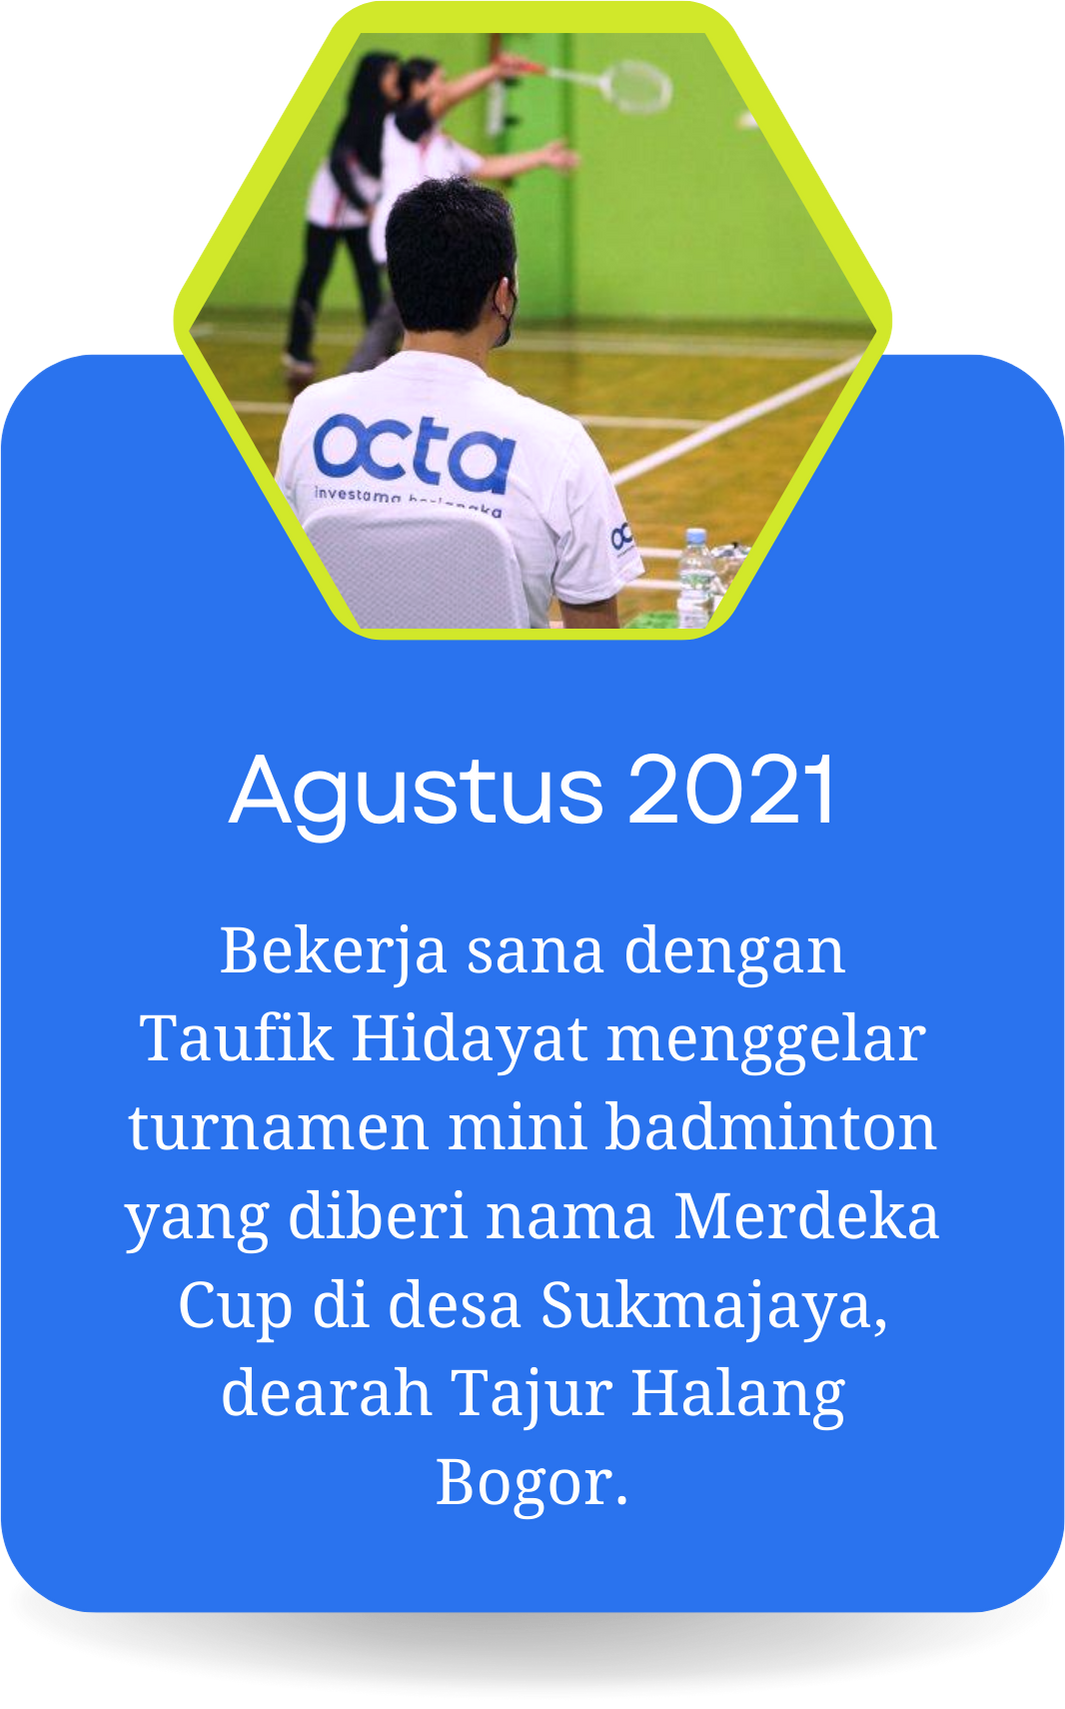 Bekerja sama dengan Taufik Hidayat menggelar turnamen mini badminton yang diberi nama Merdeka Cup di desa Sukmajaya, dearah Tajur Halang Bogor.